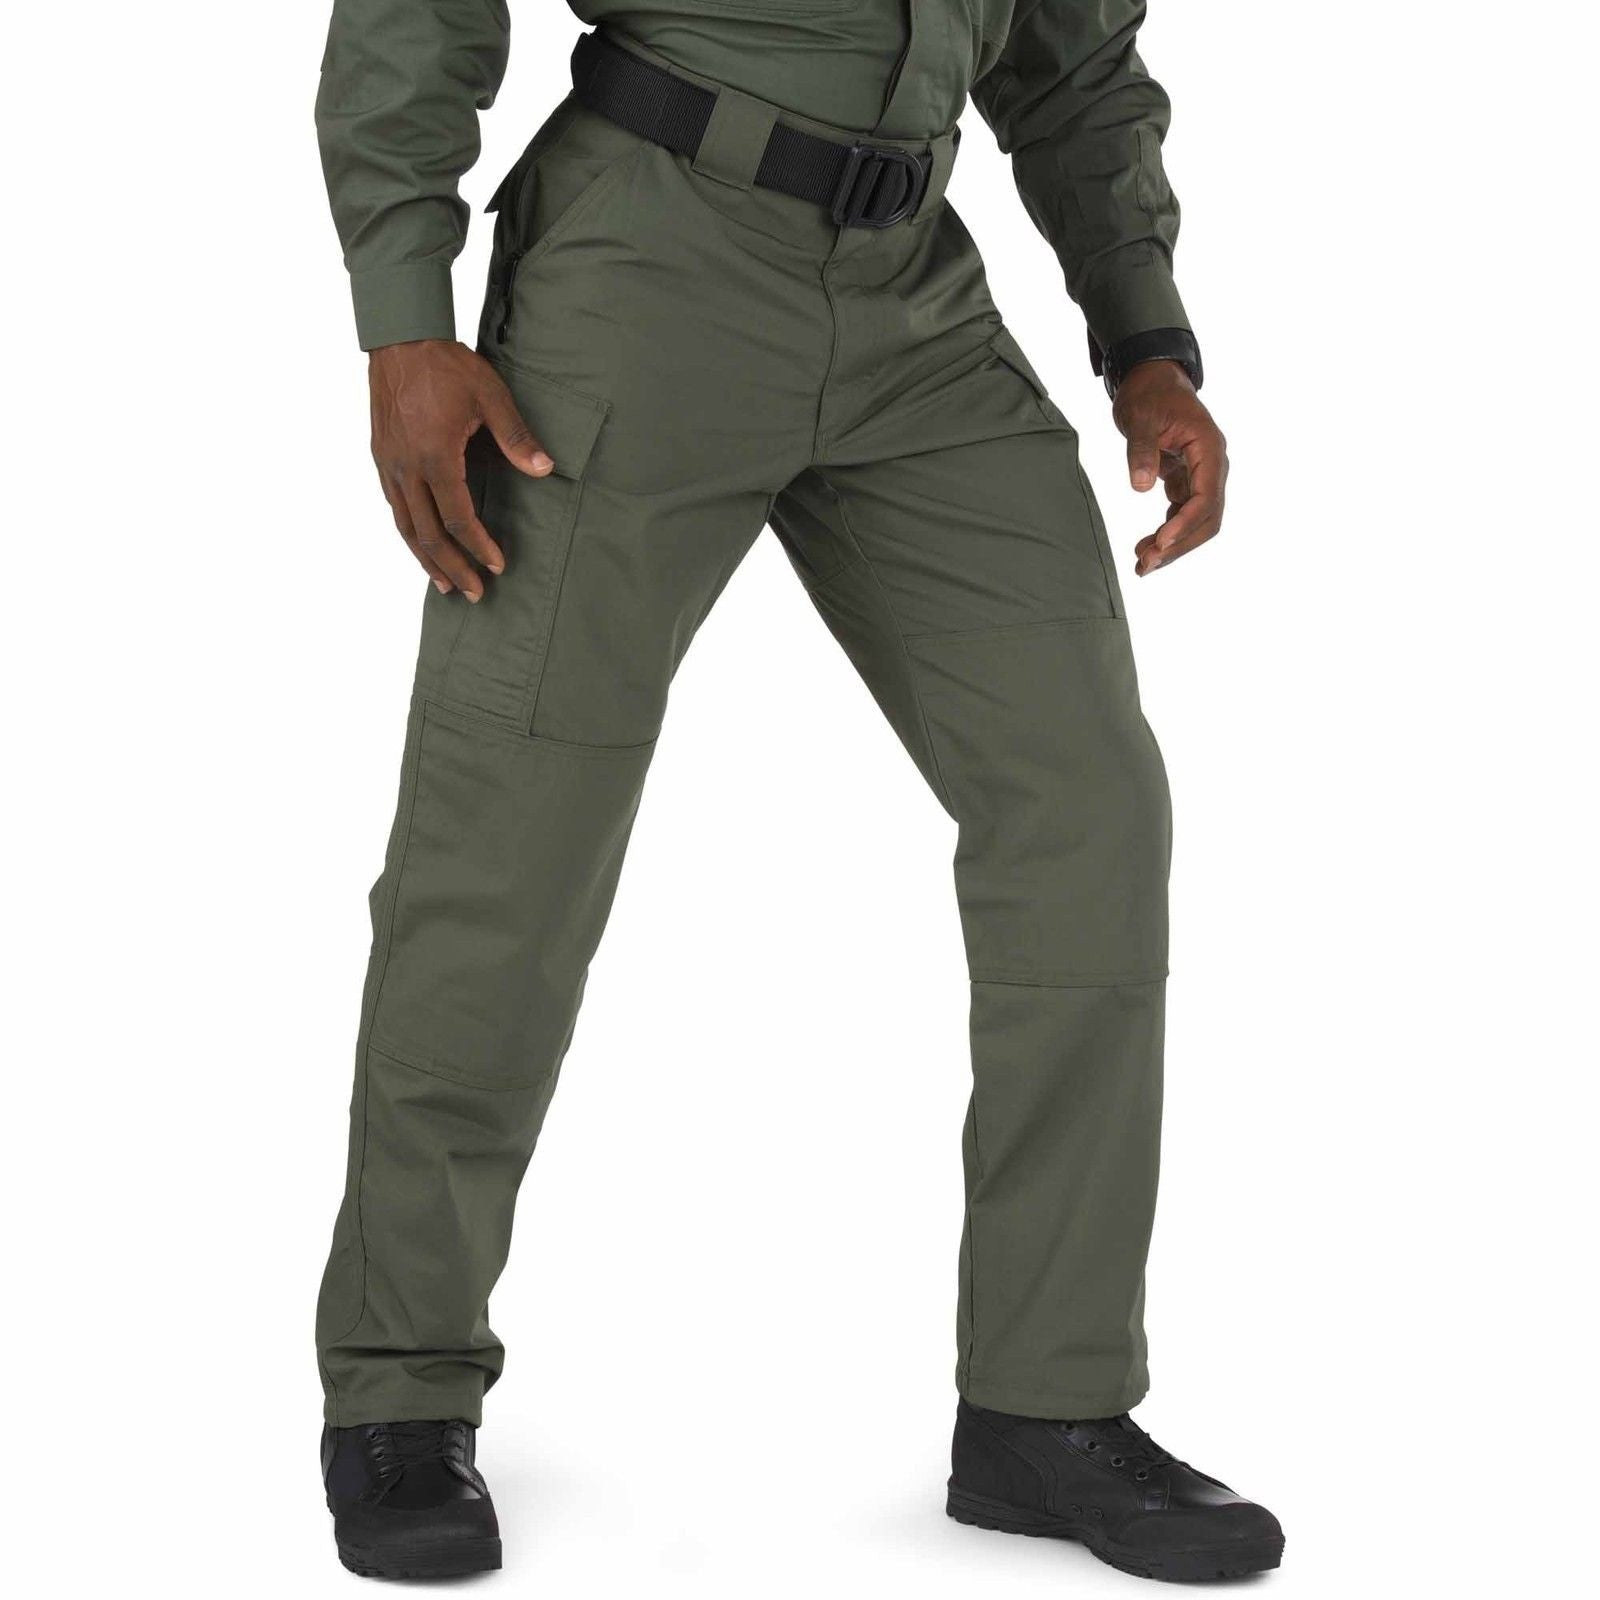 5.11 Tactical TDU Taclite Cargo Pants Mens Ripstop Field Duty Uniform ...